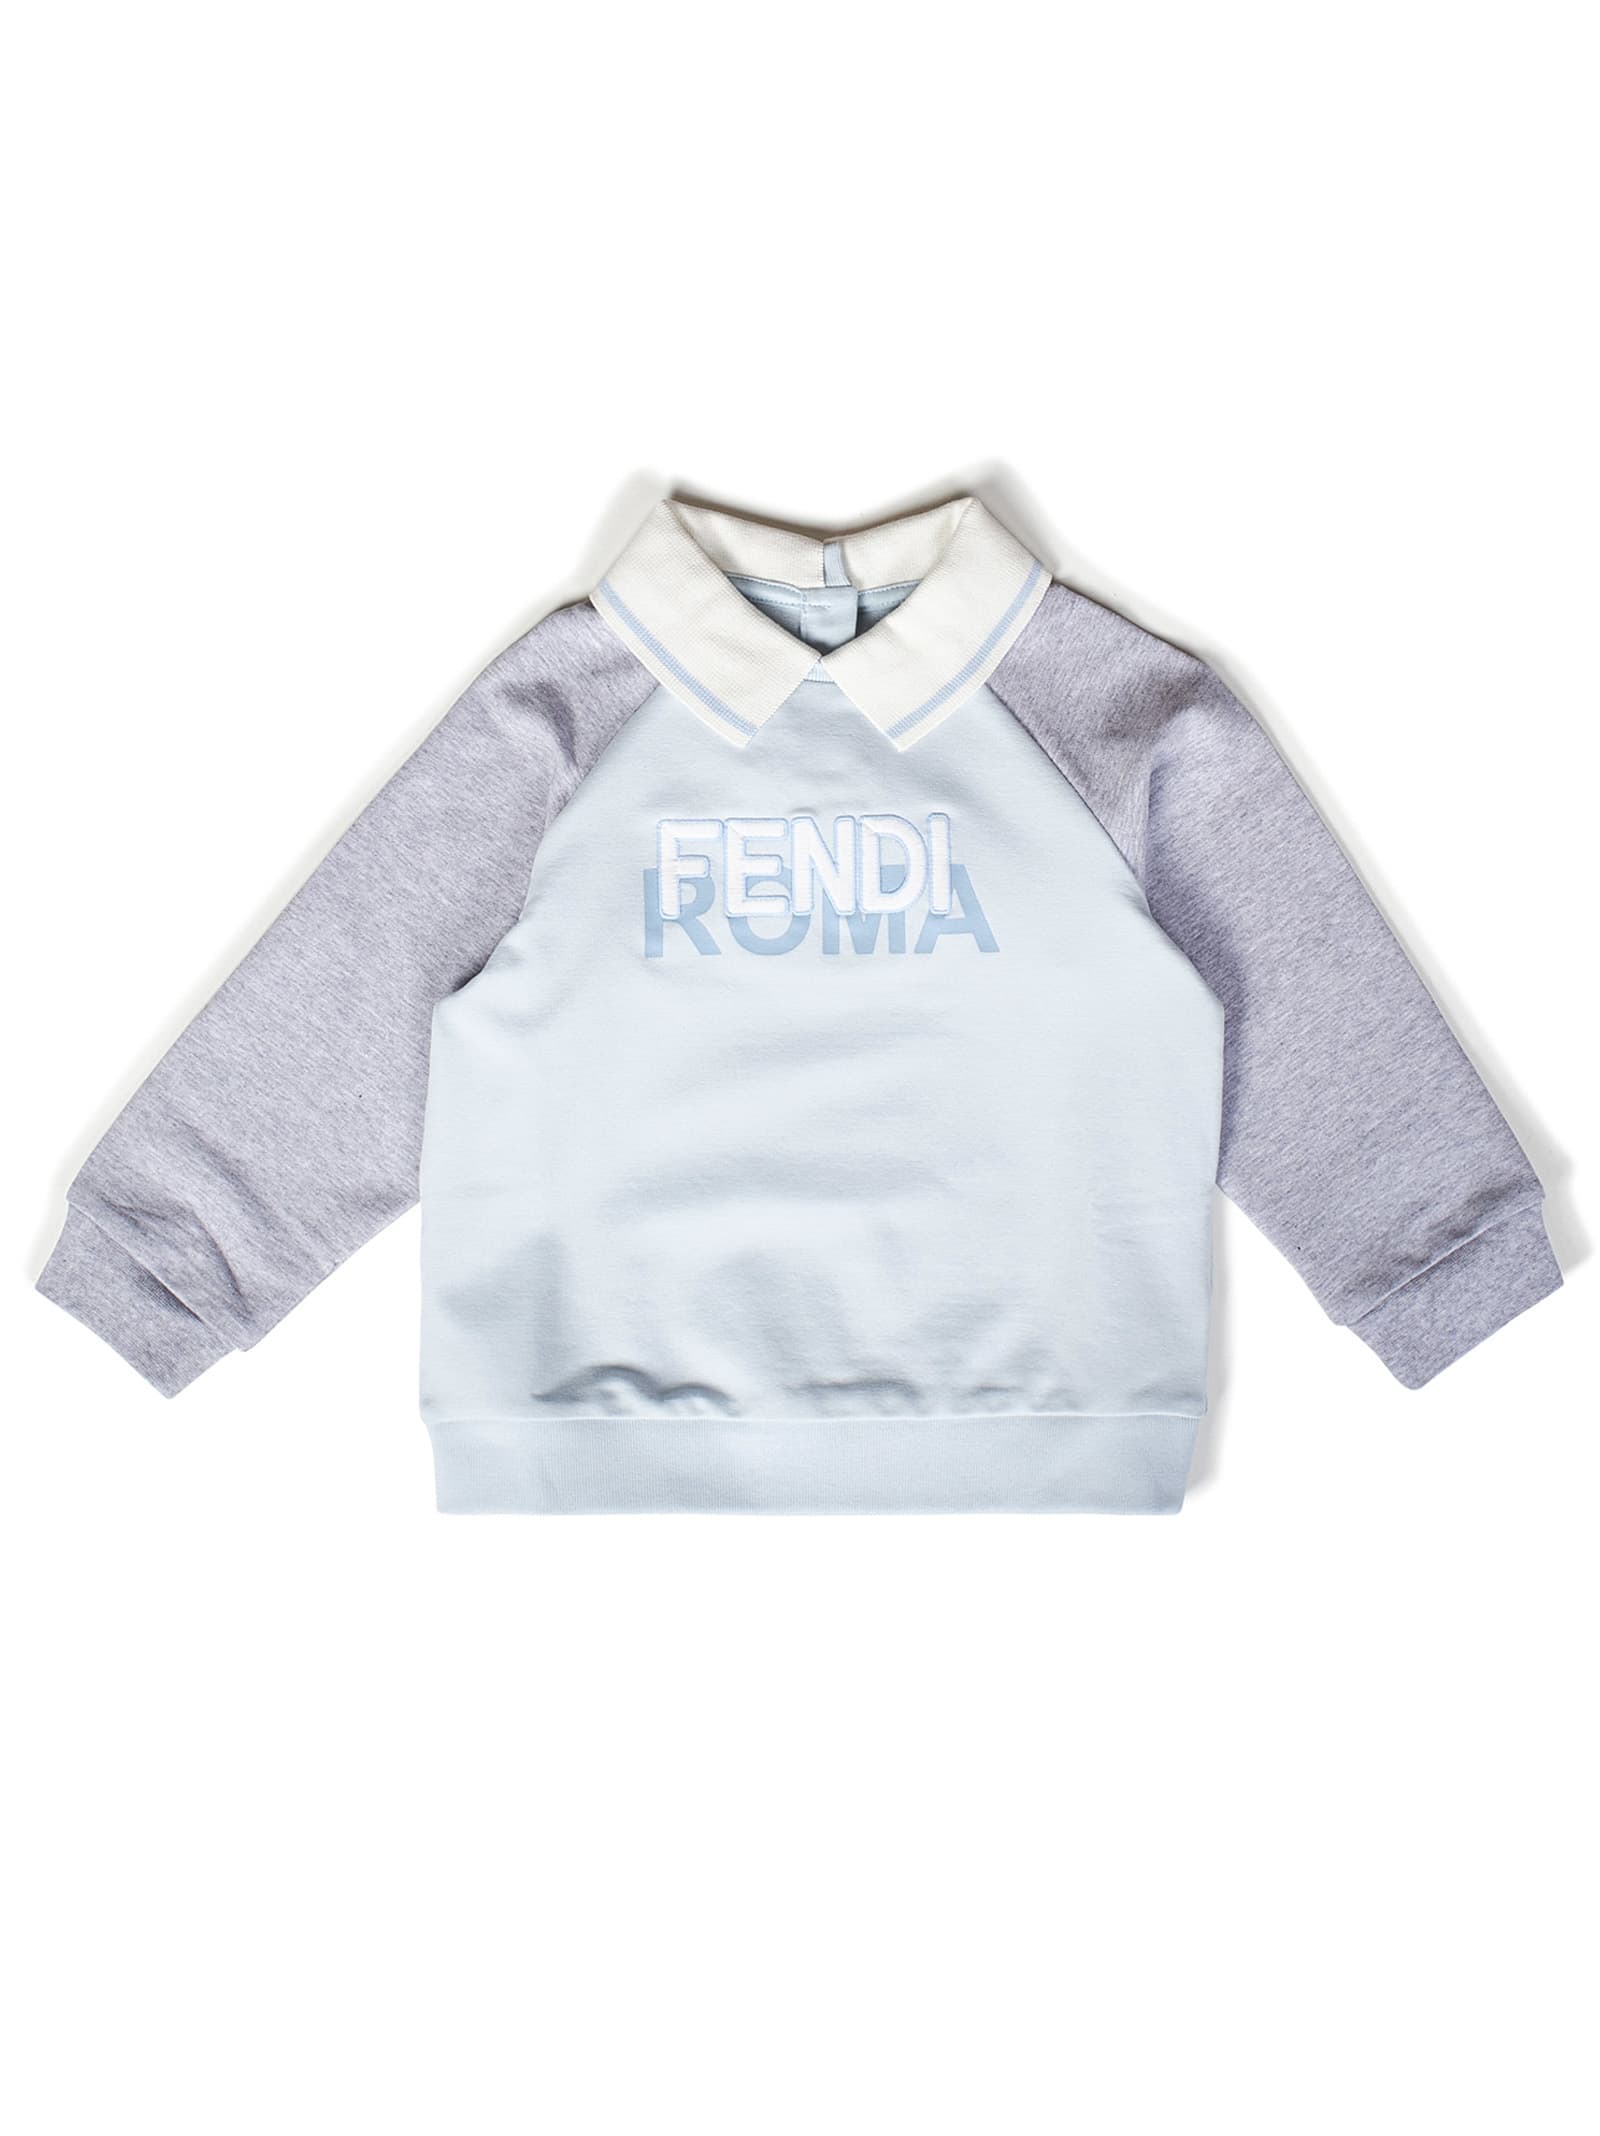 Fendi Babies' Sweatshirt In Light Blue